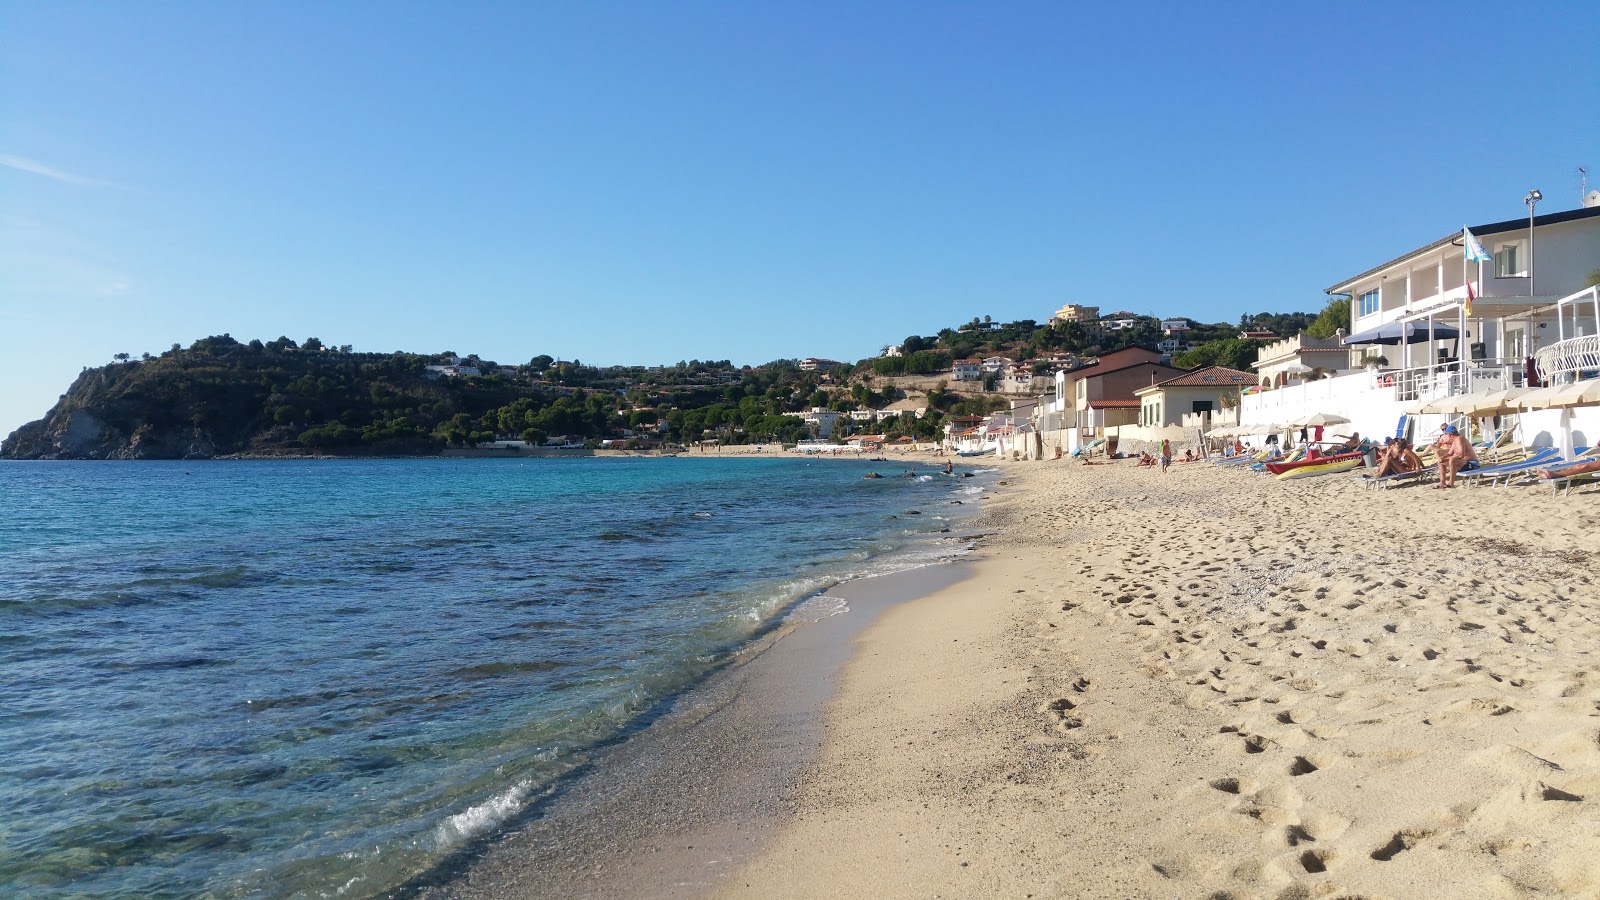 Spiaggia Santa Maria'in fotoğrafı parlak kum yüzey ile